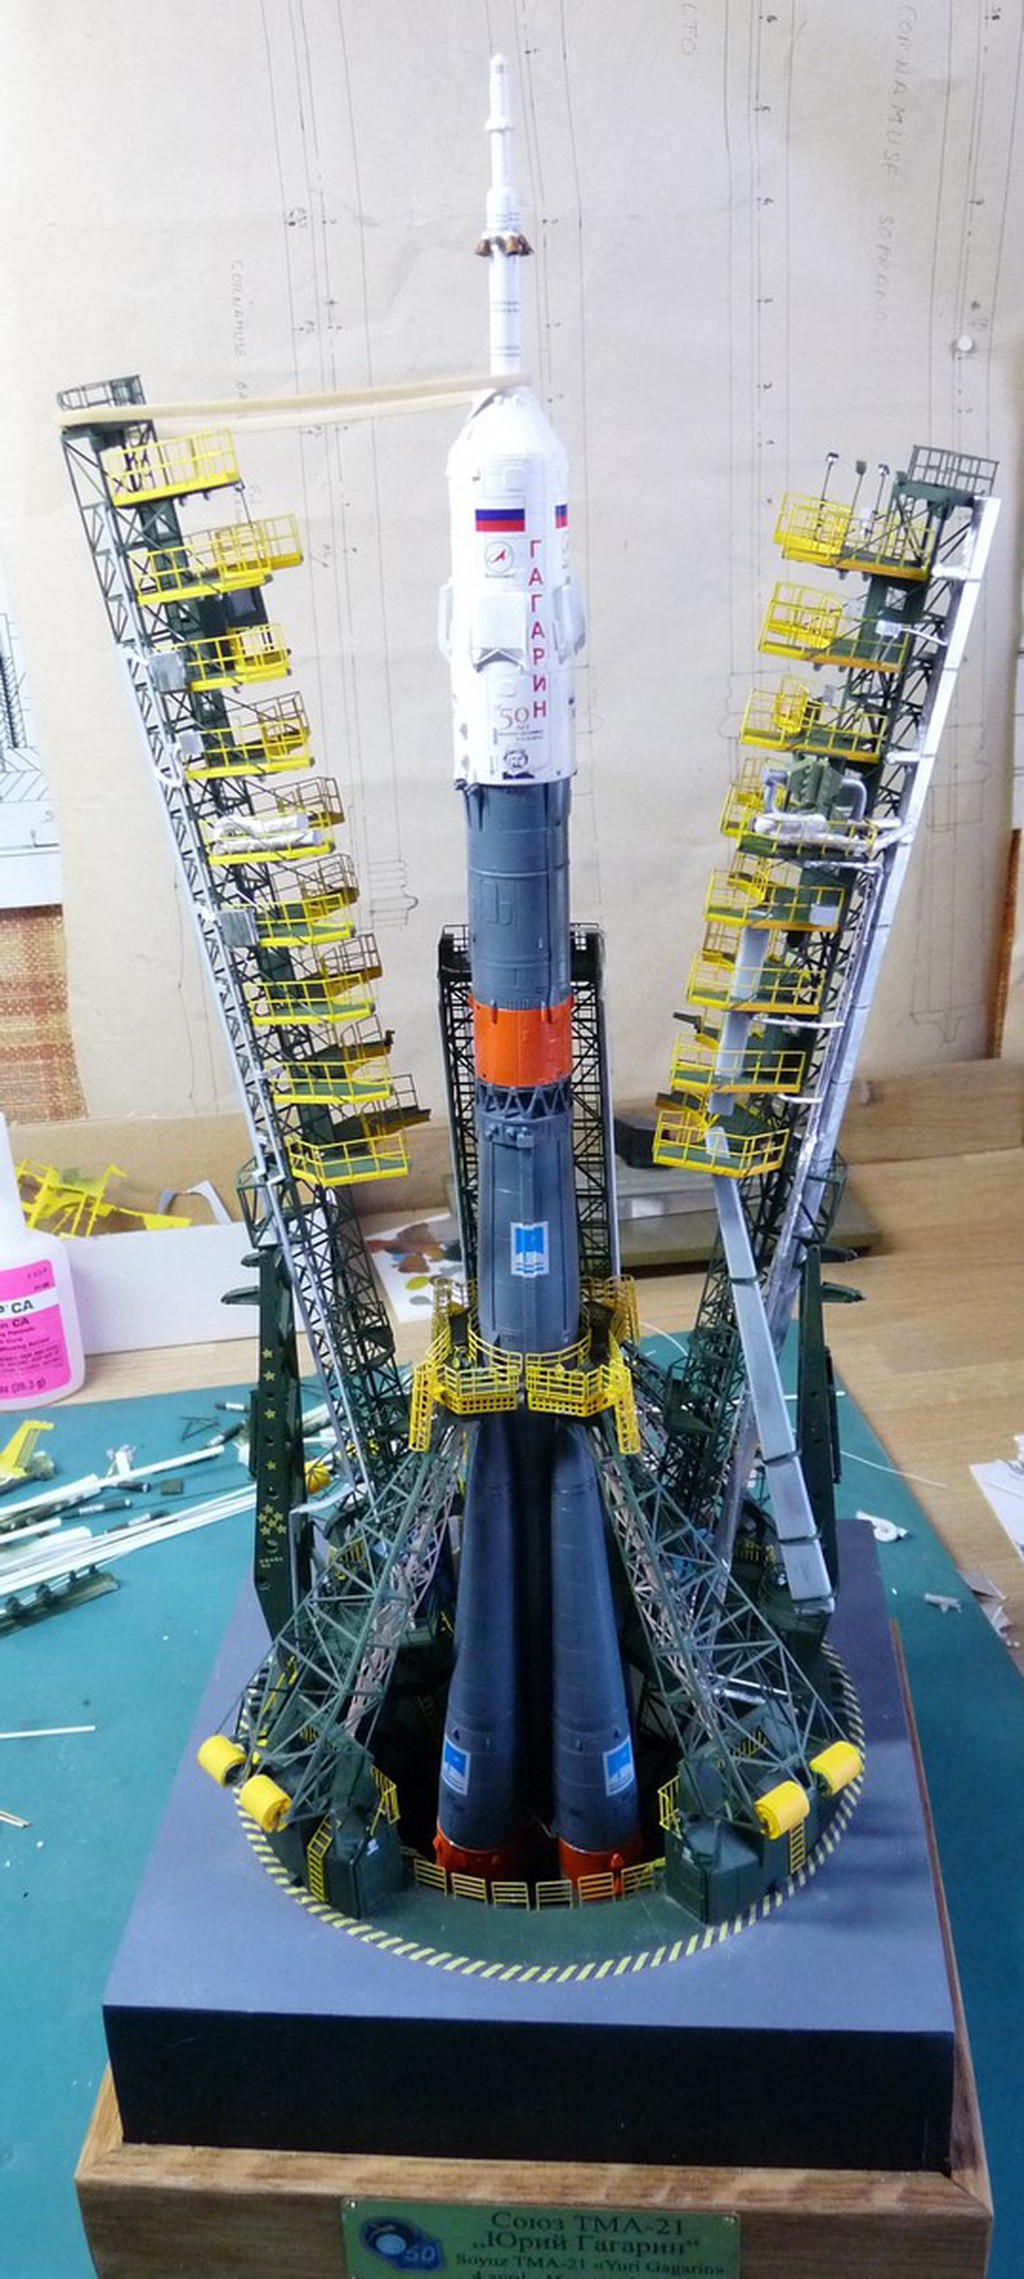 La fusée russe Soyouz TMA-21 sur son pas de tir au 144e  - Page 2 17072607302623134915172600